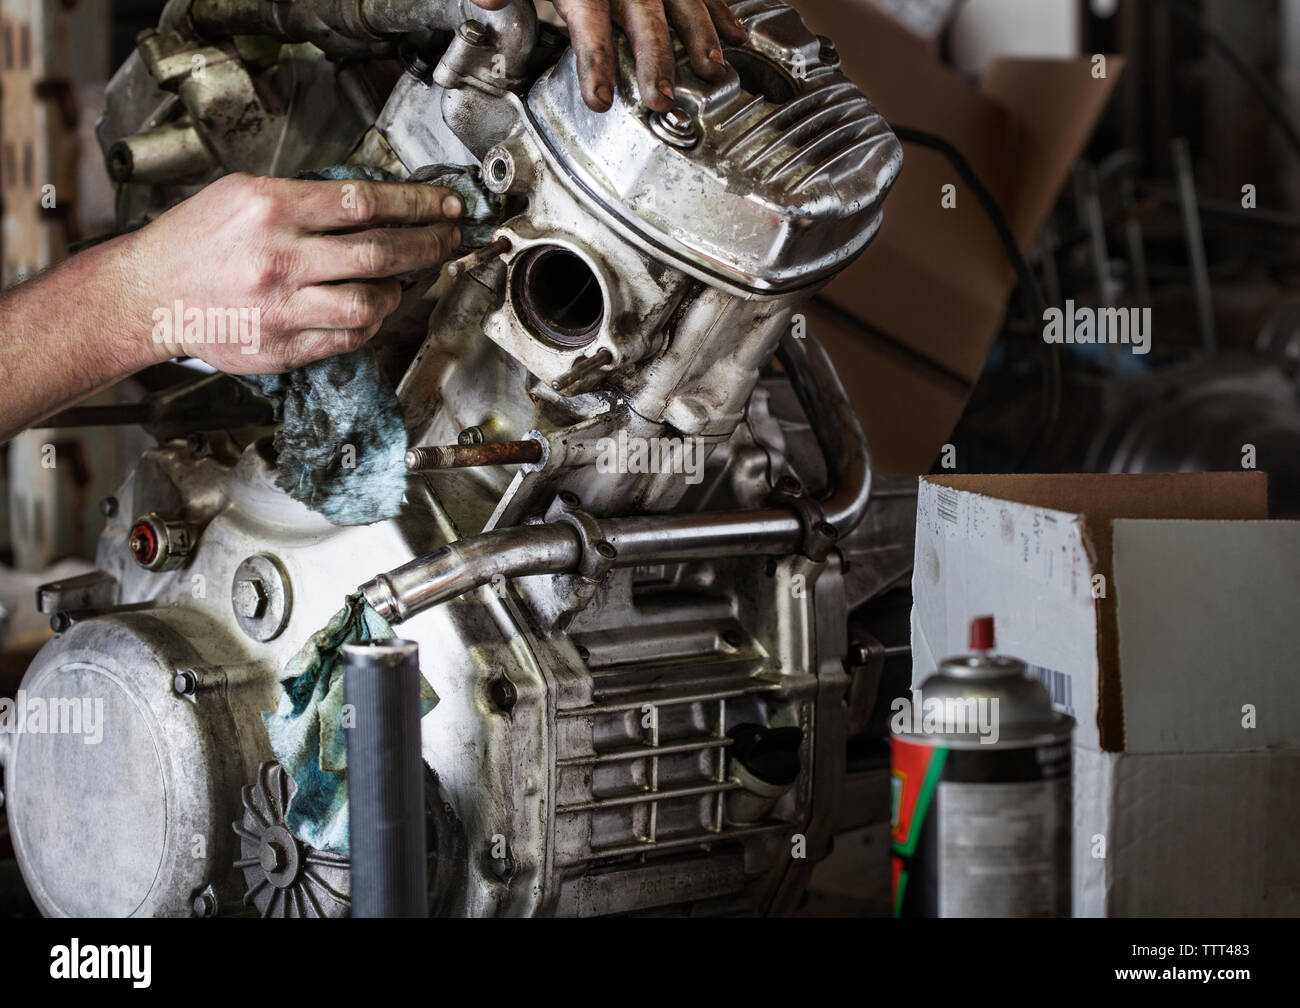 Nettoyage De La Moto à L'atelier De Lavage De Voiture Photo stock - Image  du moteur, injection: 239360408